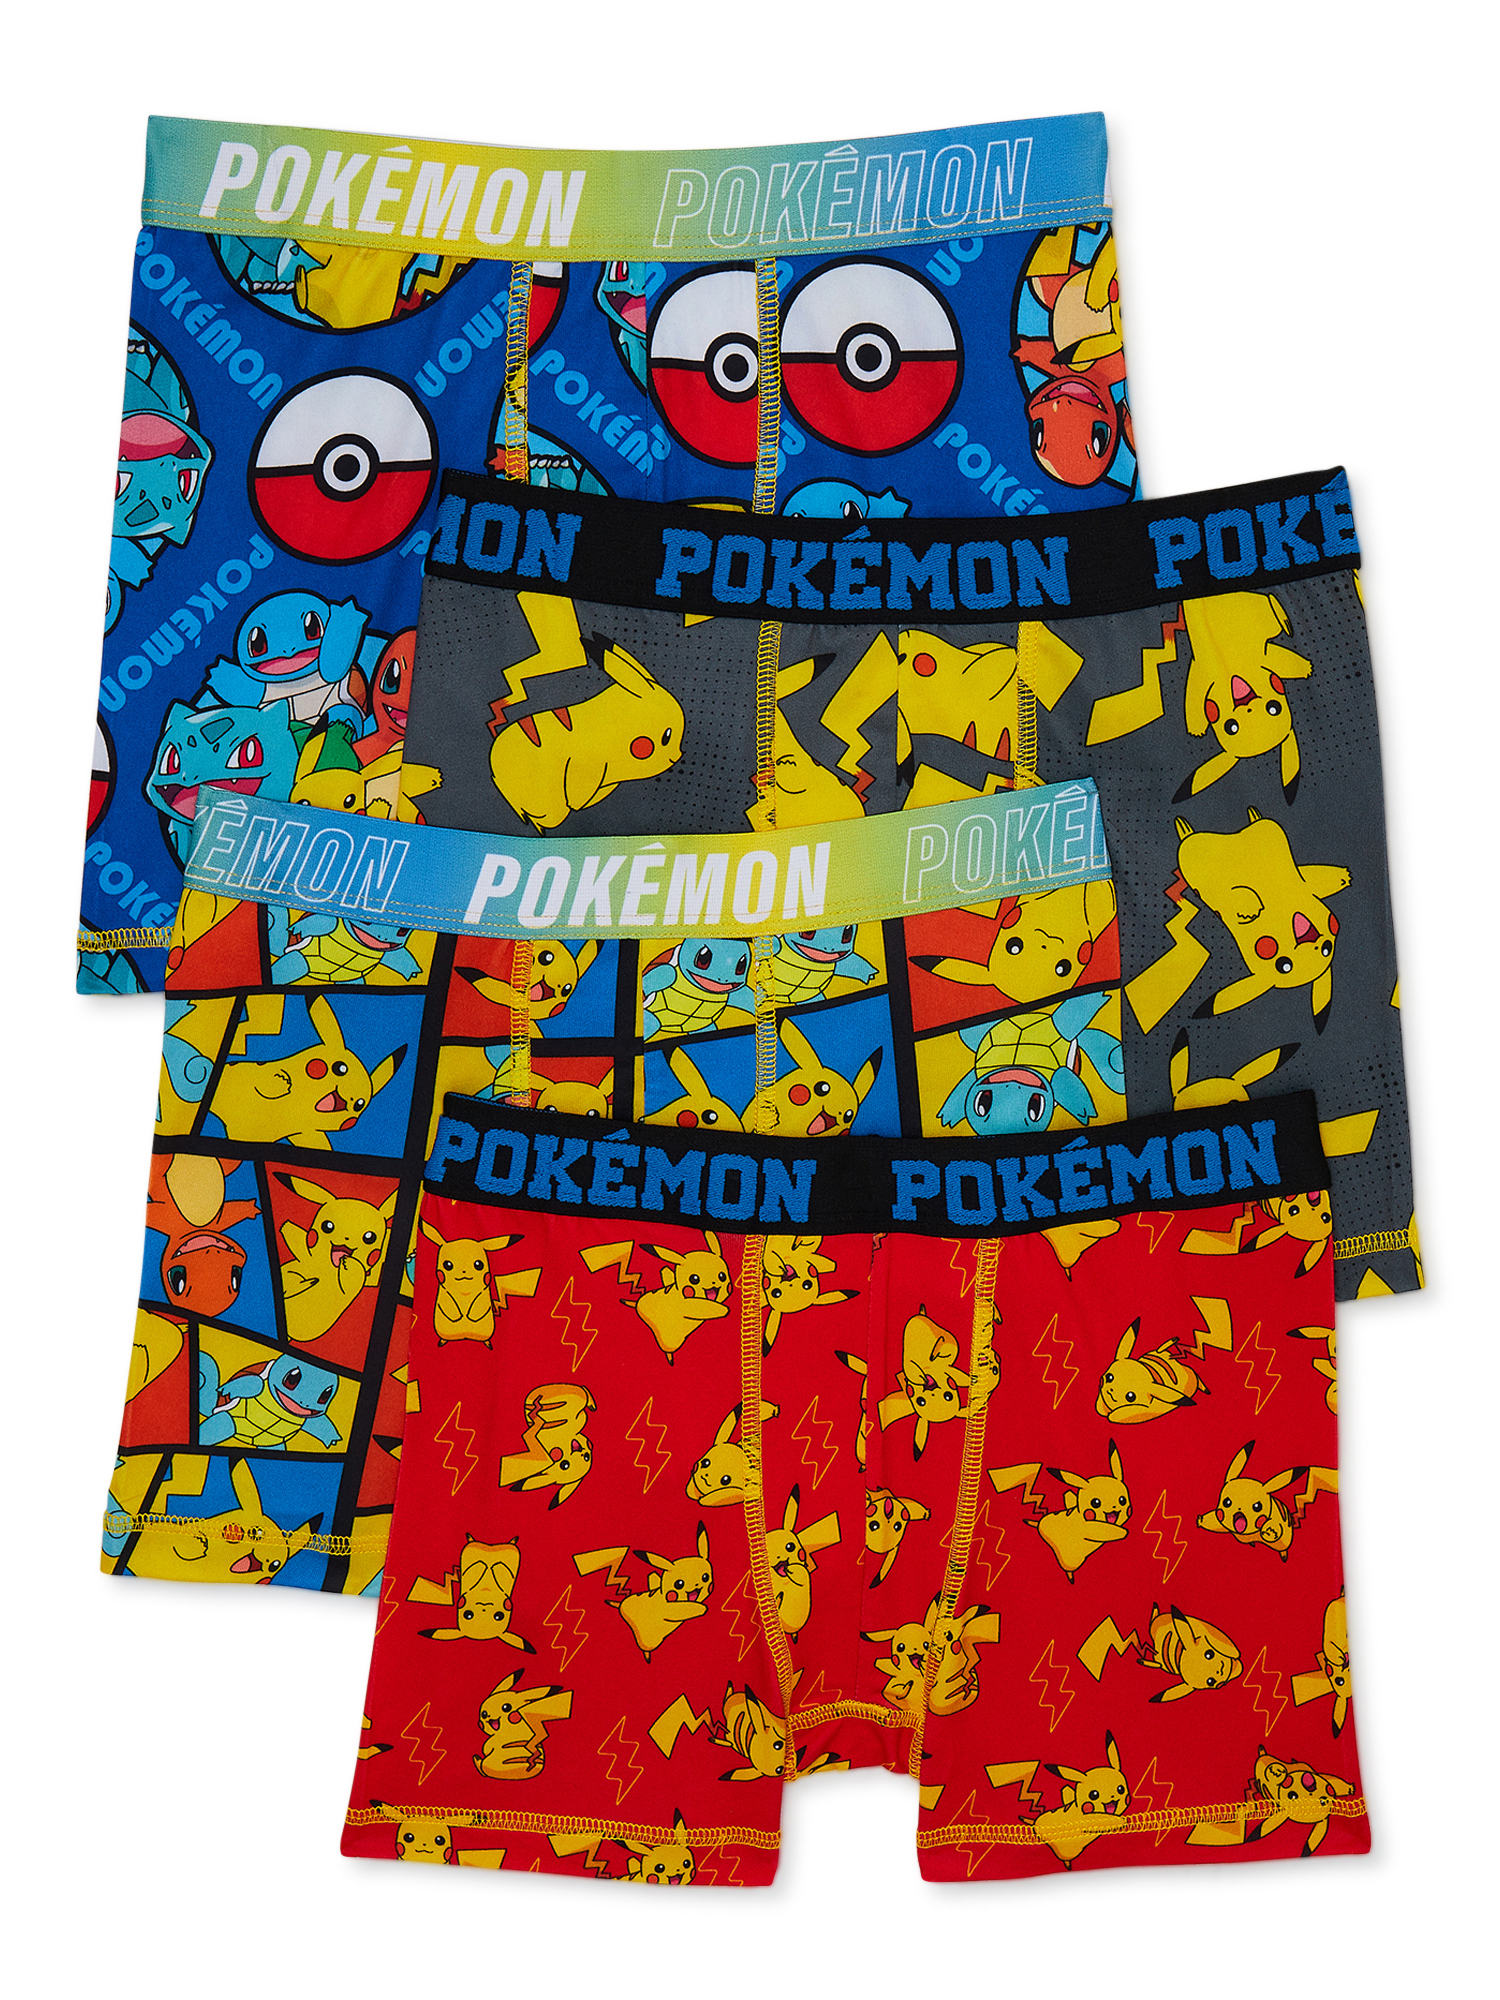 Pokémon Boy's Boxer Briefs Underwear, 4-pack, Sizes 4-14 - image 1 of 7